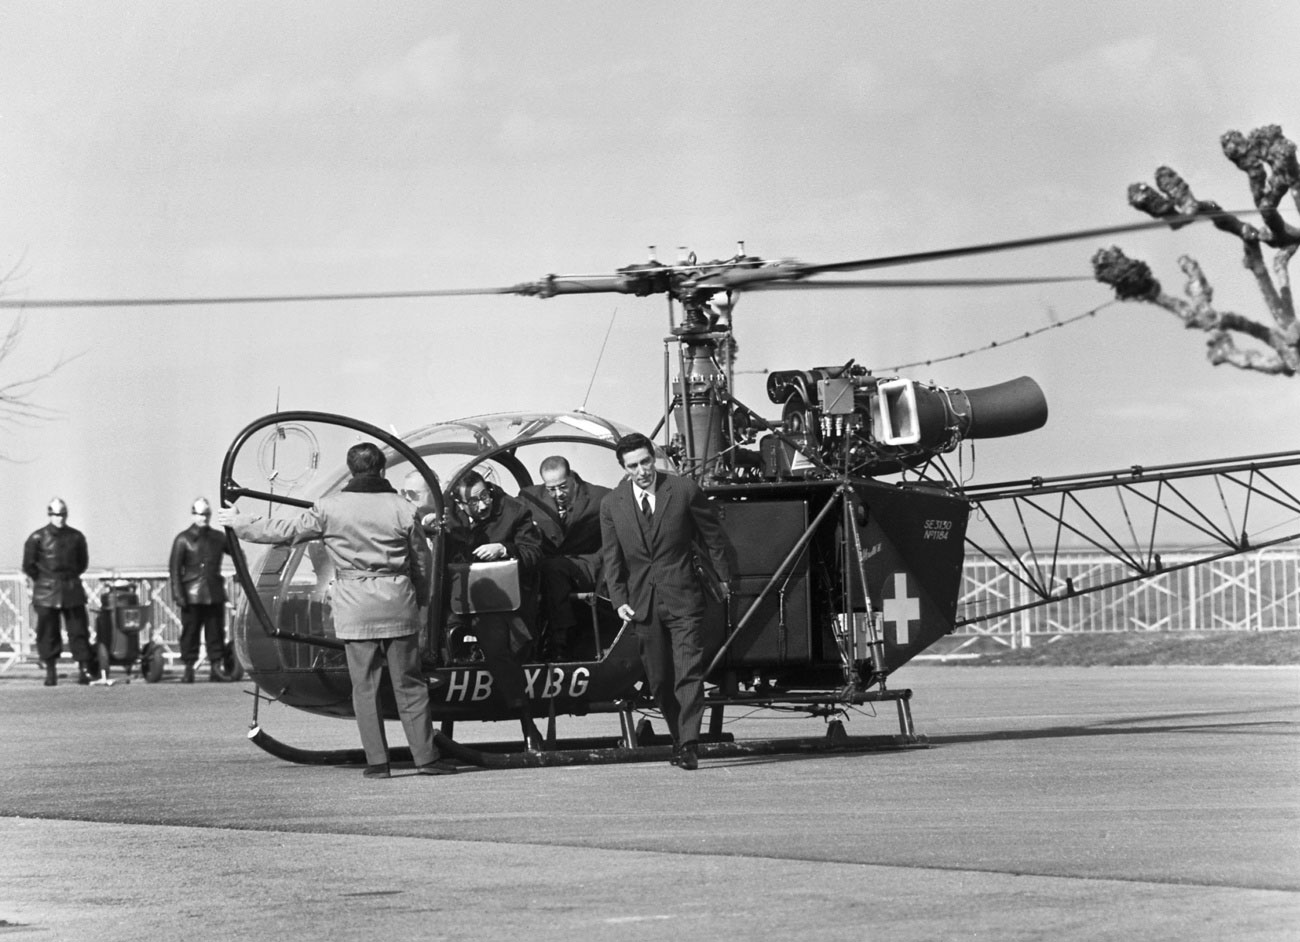 Photographiés le 7 mars 1962, des membres de la délégation algérienne descendent de l'hélicoptère de l'armée suisse qui les a amenés à Evian où se déroulent les négociations avec la France.